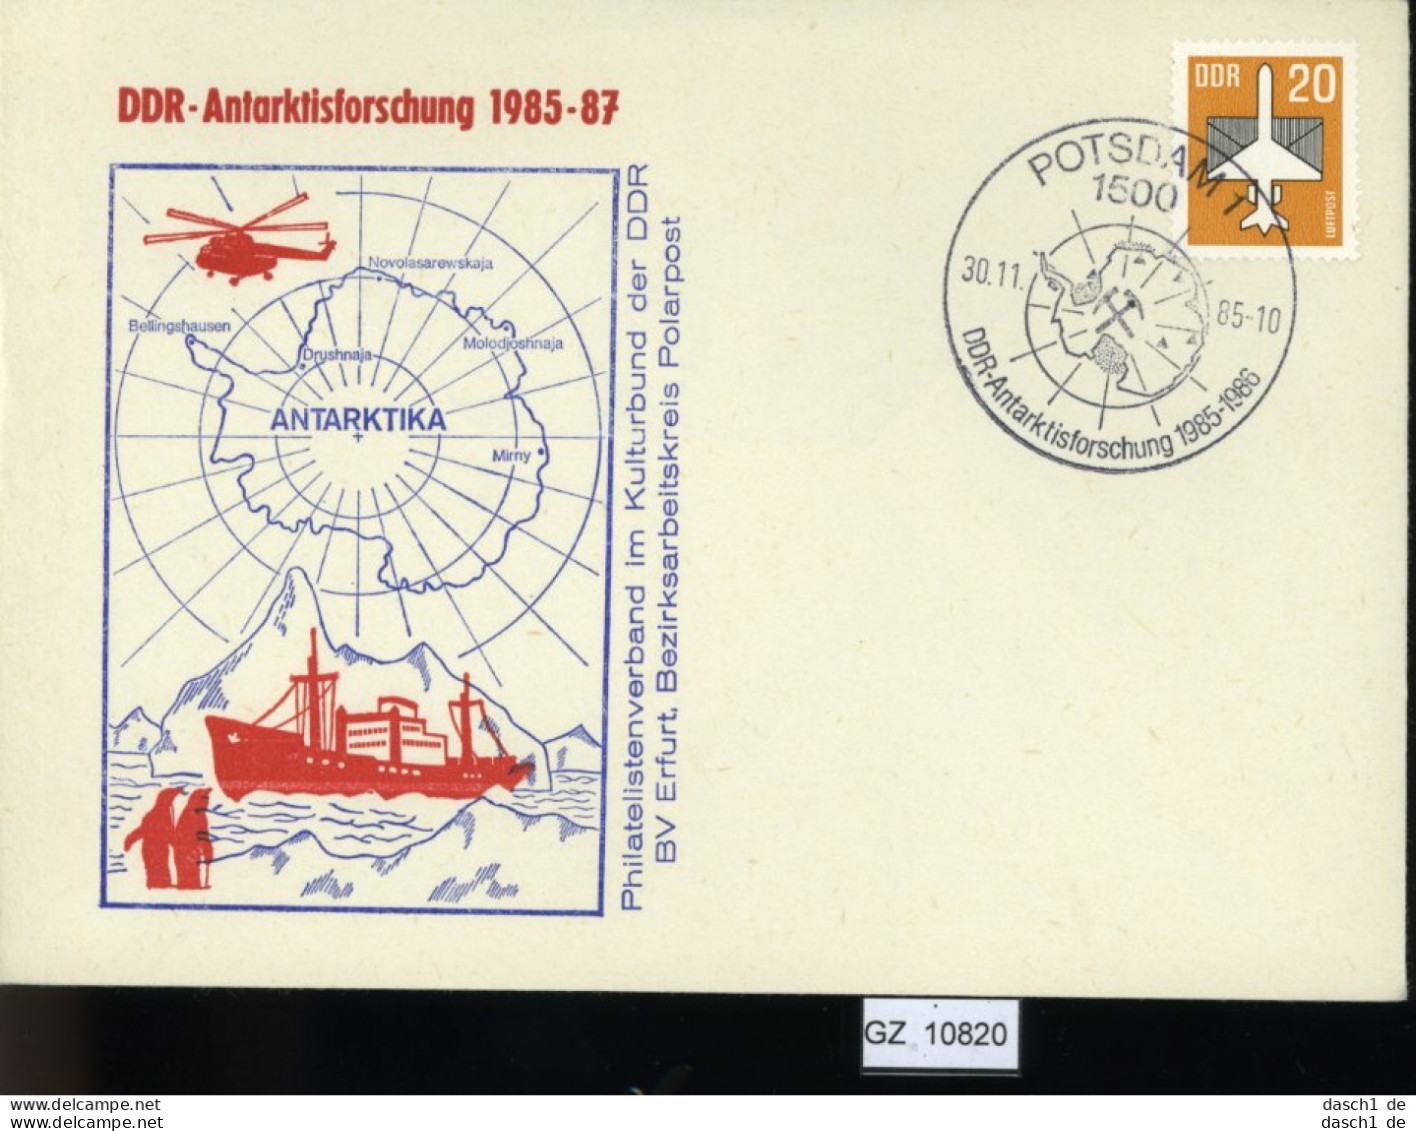 Motiv, 3 Lose U.a. Segelschulschiff Gorch Fock 1980 Auf Den Bermudas - Autres (Mer)